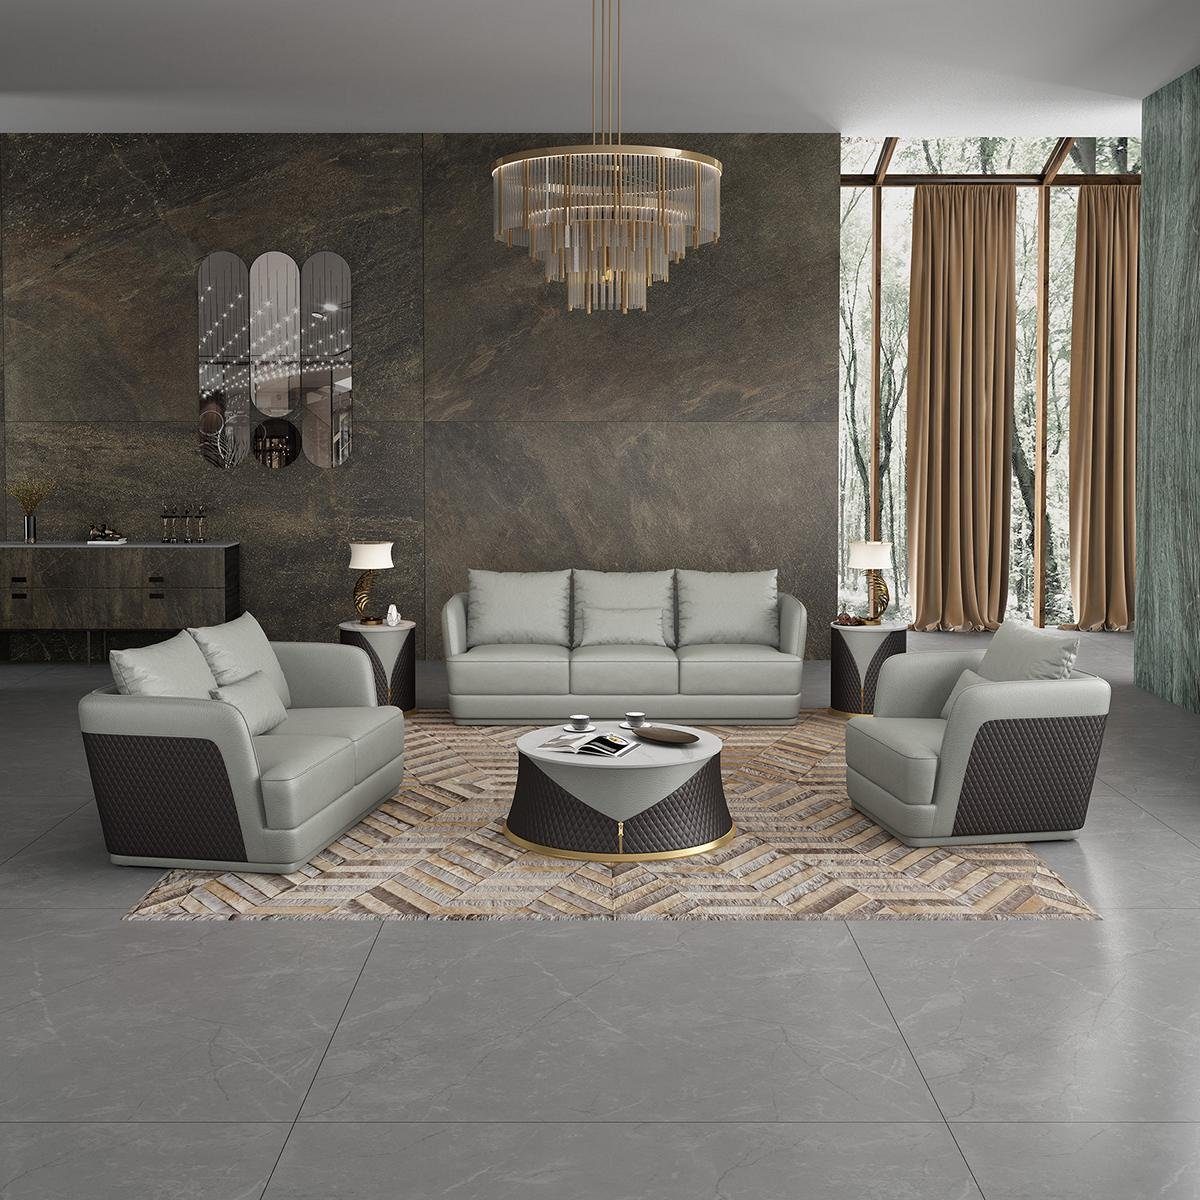 JVmoebel 3-Sitzer, Luxus Sofa Design Couch Polster Moderne Sofas 3 Sitzer Silber